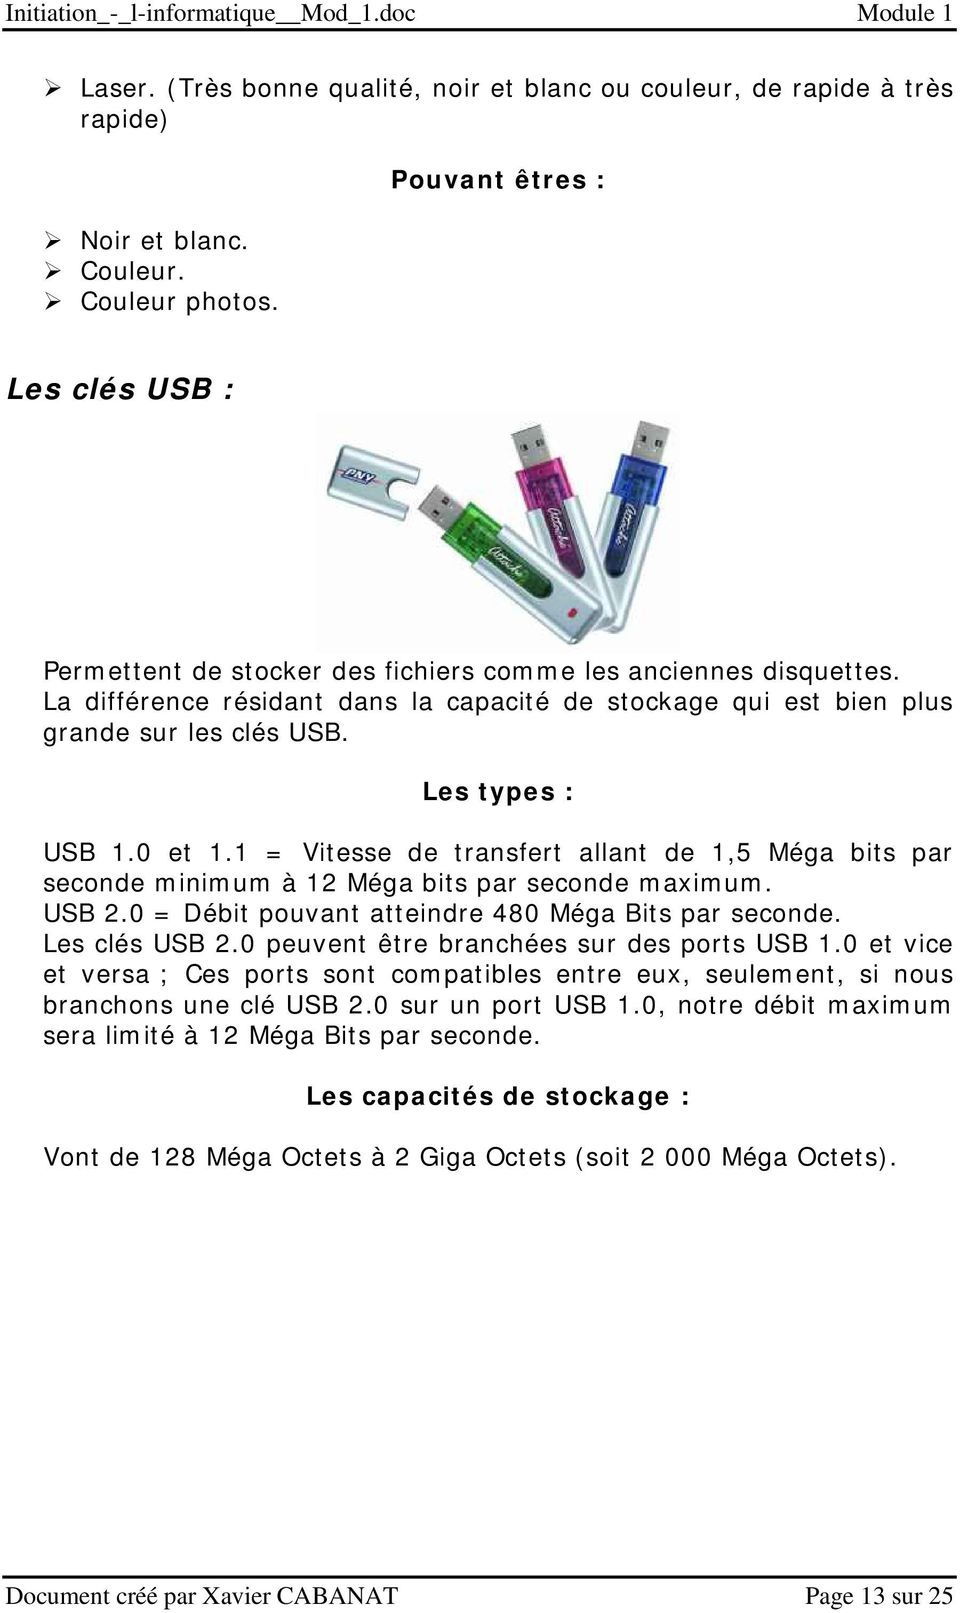 Les types : USB 1.0 et 1.1 = Vitesse de transfert allant de 1,5 Méga bits par seconde minimum à 12 Méga bits par seconde maximum. USB 2.0 = Débit pouvant atteindre 480 Méga Bits par seconde.